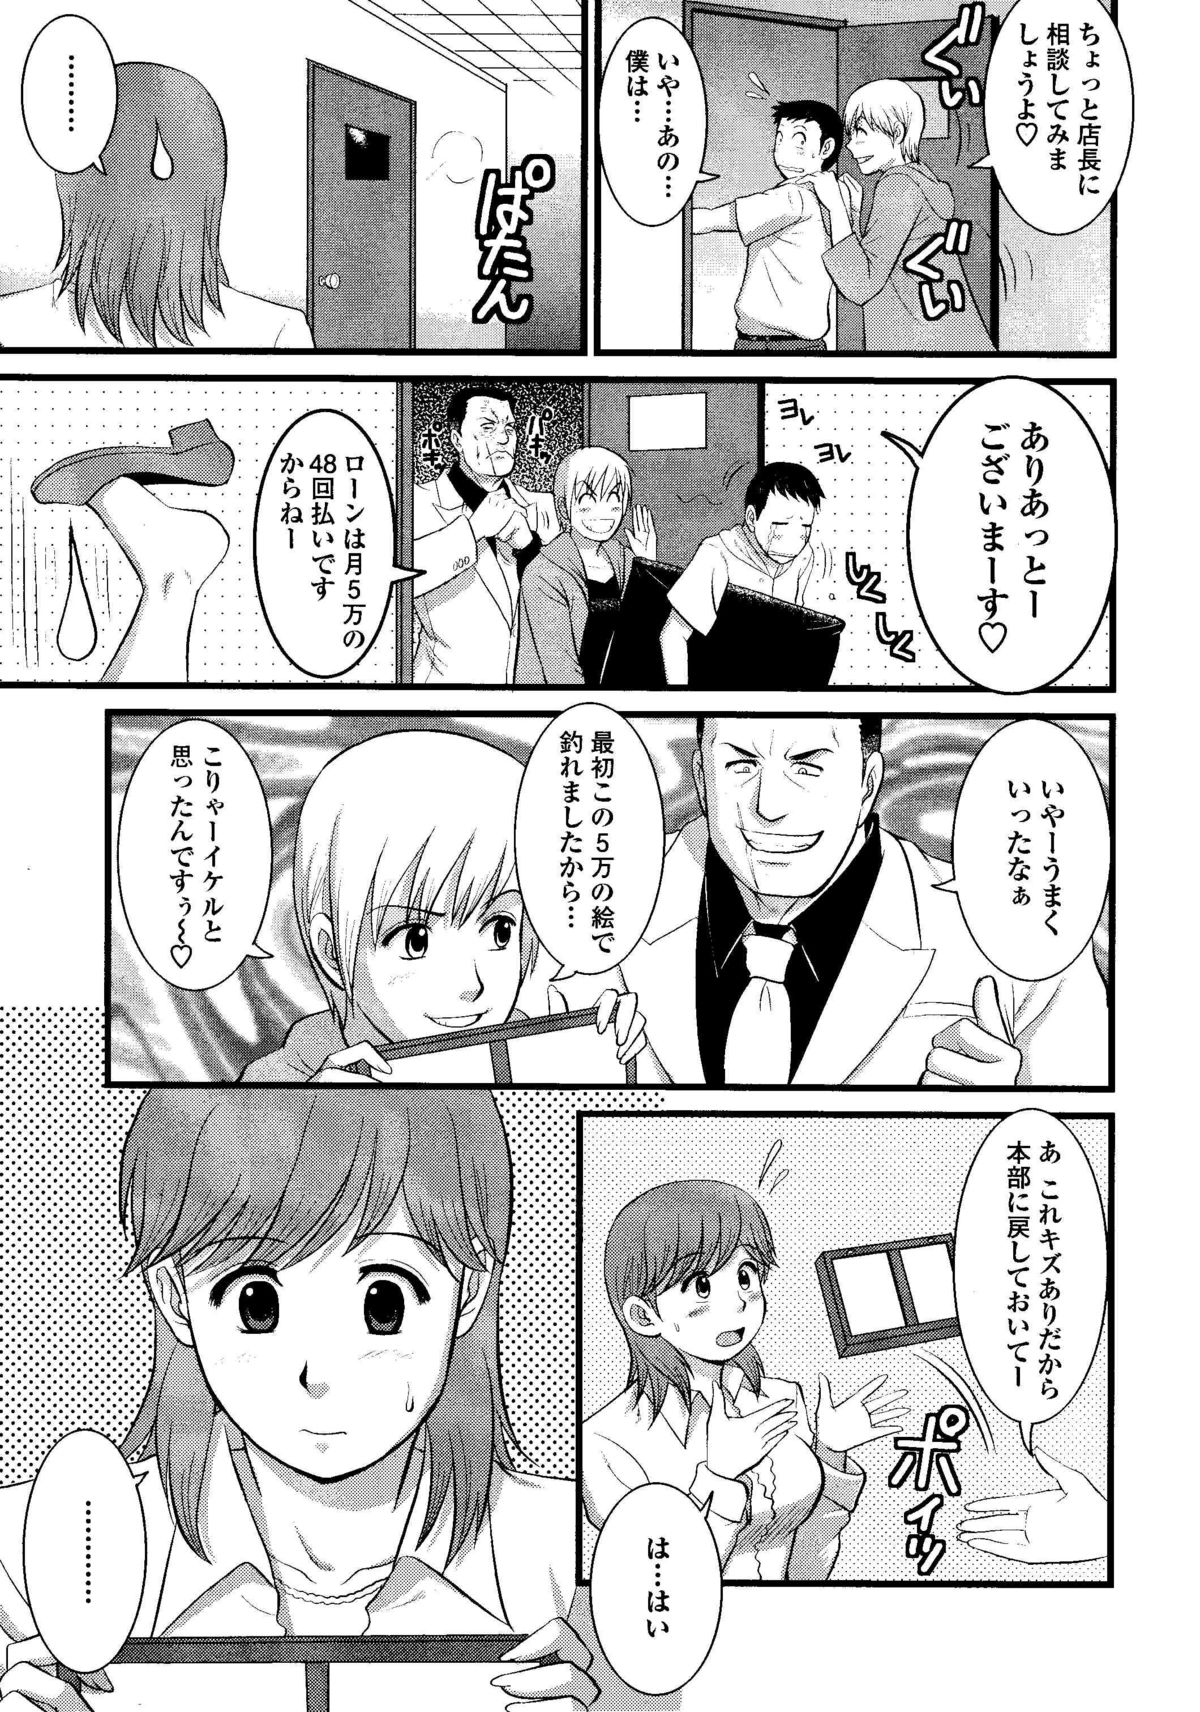 Haken no Muuko-san 8 [Saigado] page 8 full